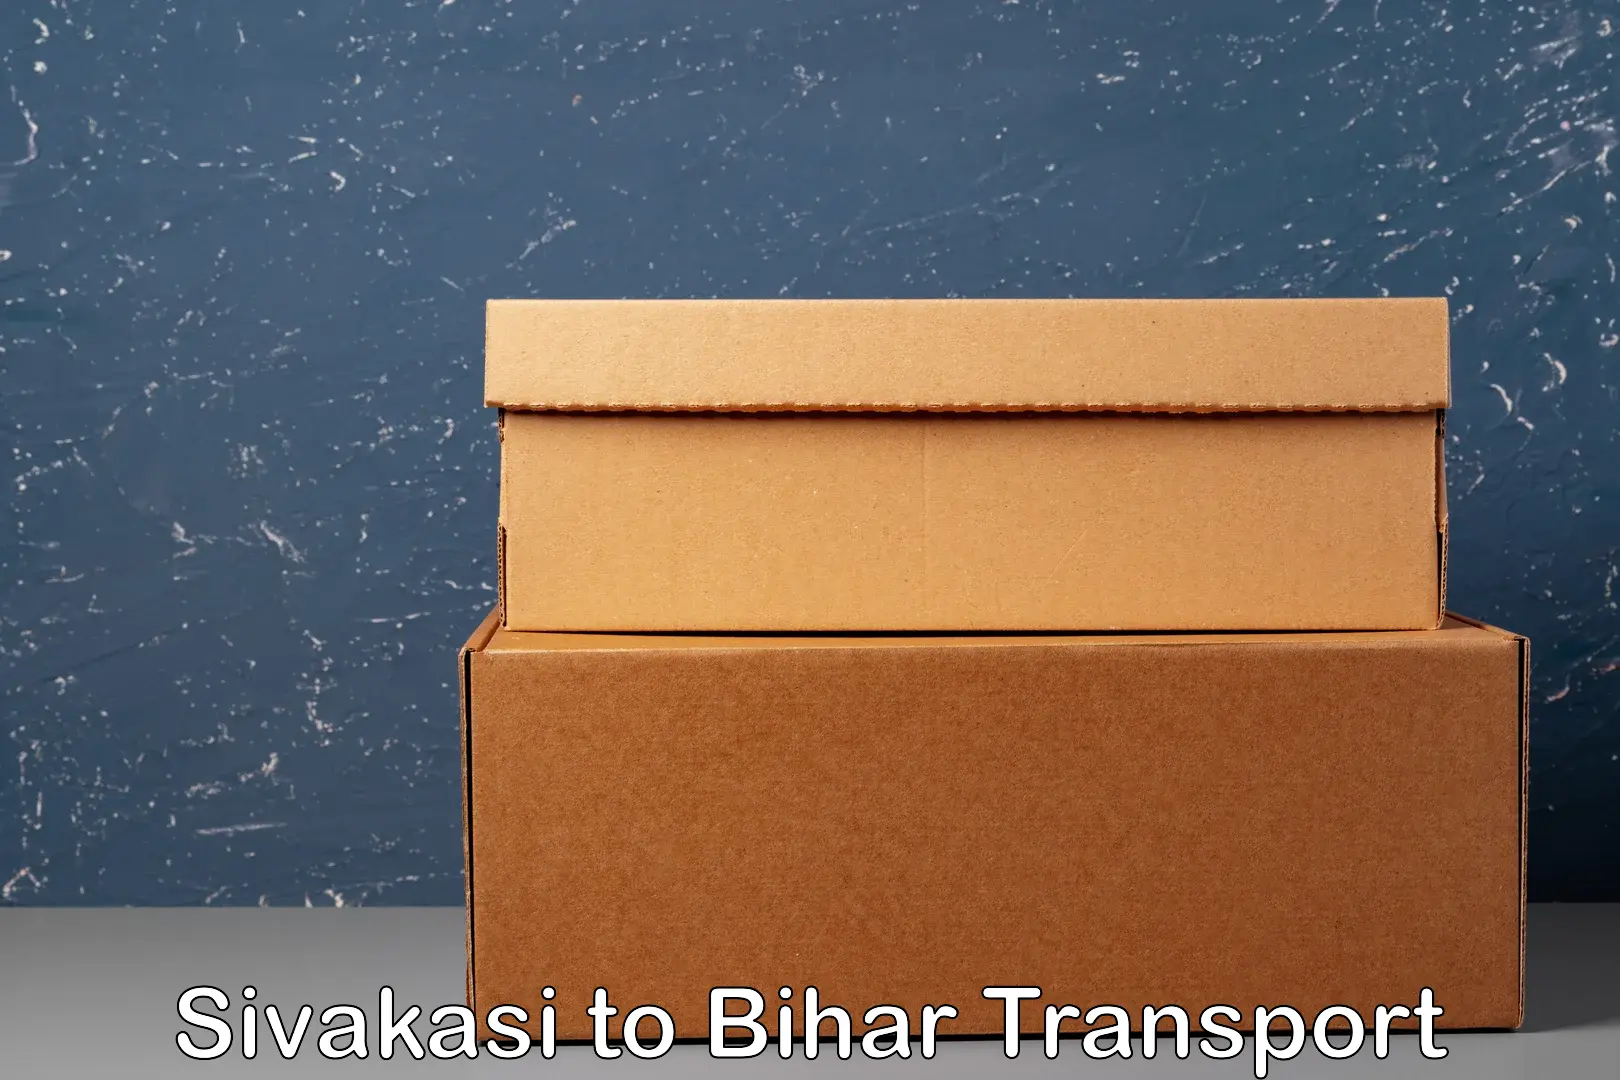 India truck logistics services Sivakasi to Bihar